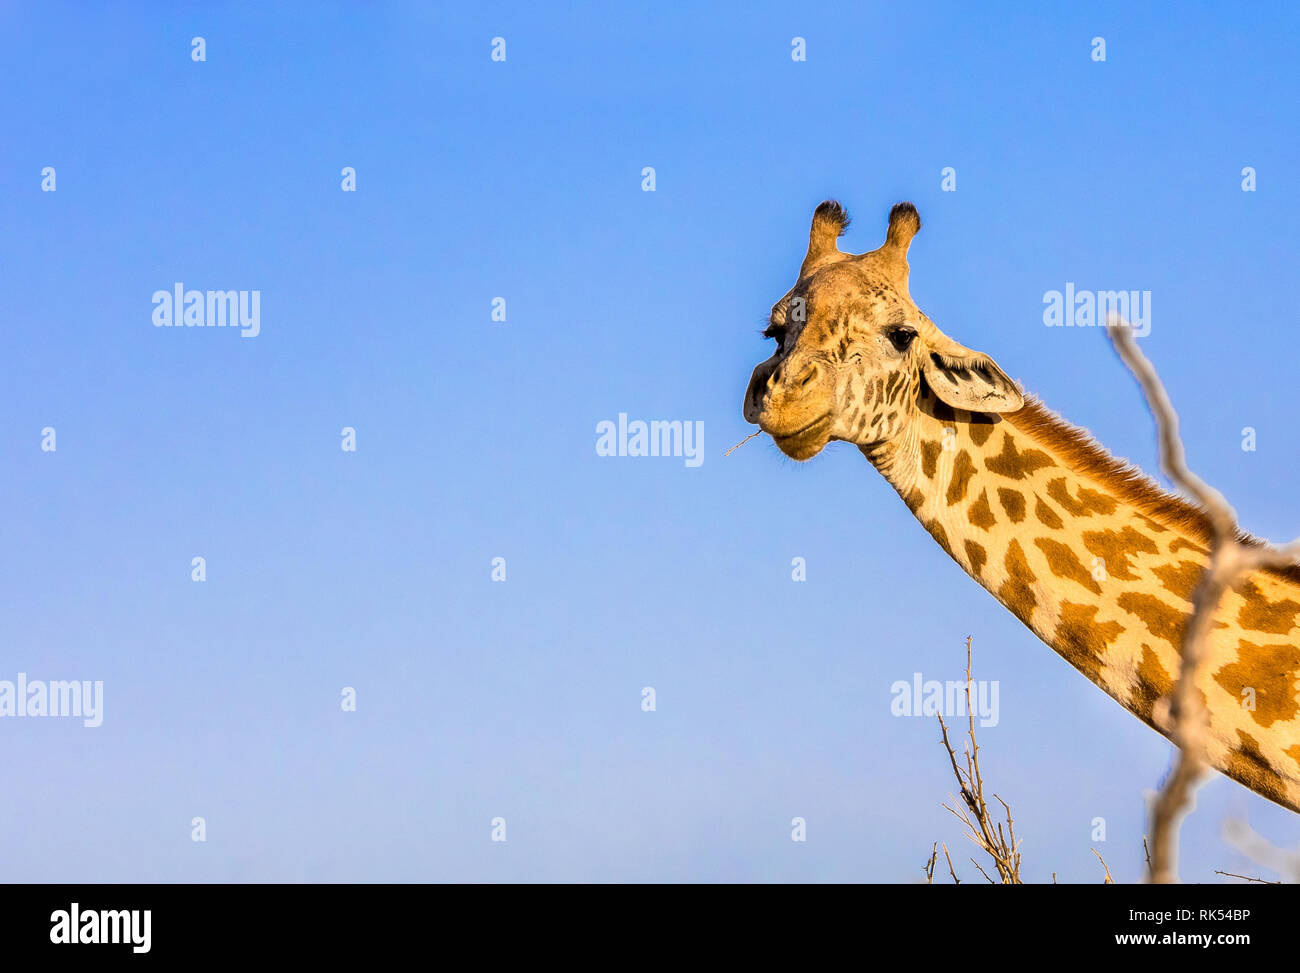 Incredibile giraffa africana sul cielo blu sullo sfondo Foto Stock